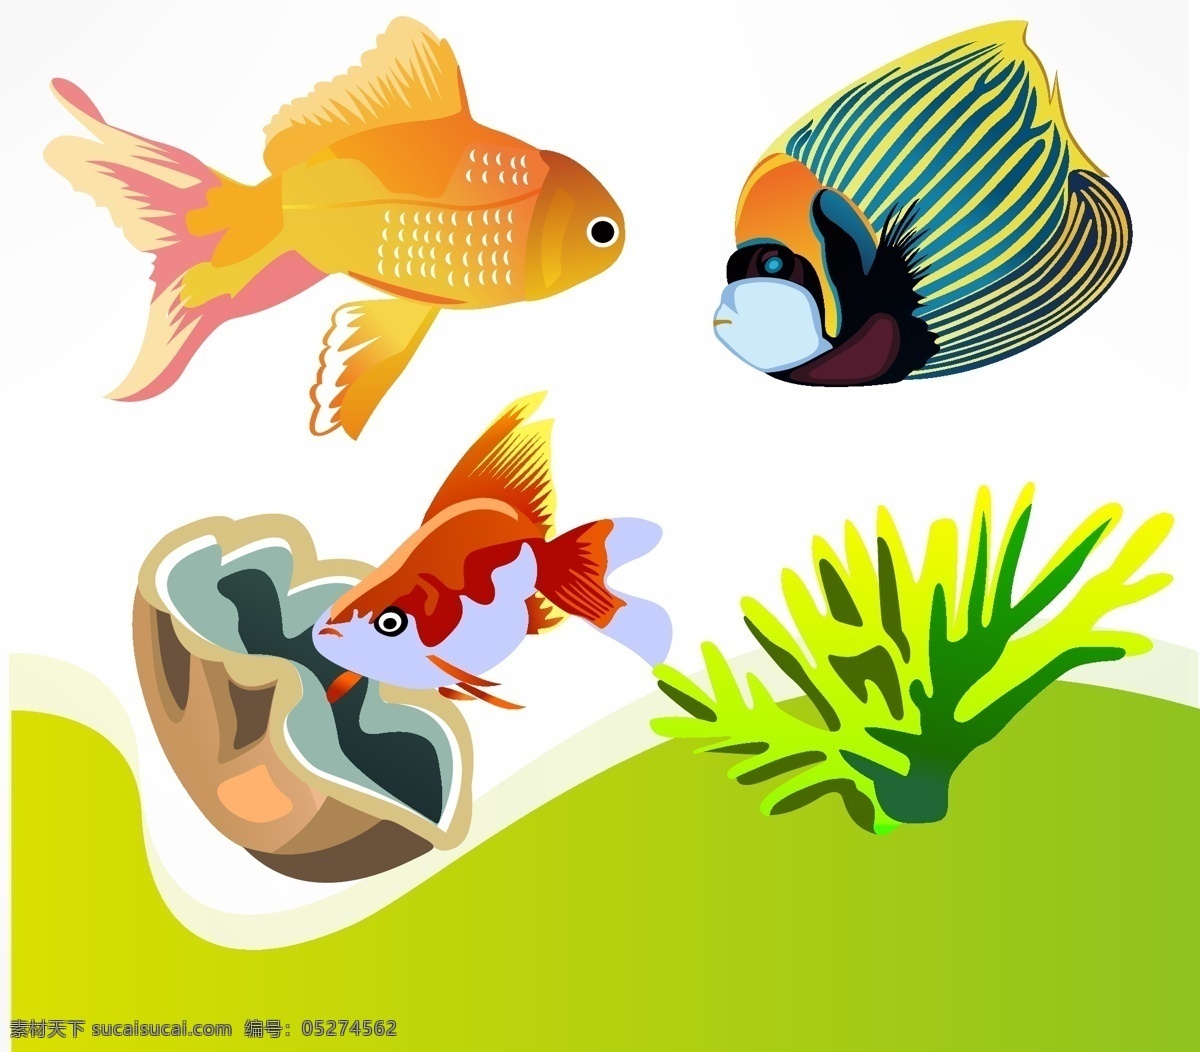 贝壳 海底世界 海洋生物 海鱼 金鱼 卡通鱼 珊瑚 生物世界 小鱼 矢量 鱼类 鱼 鱼类素材 可爱小鱼 漂亮小鱼 ai广告设计